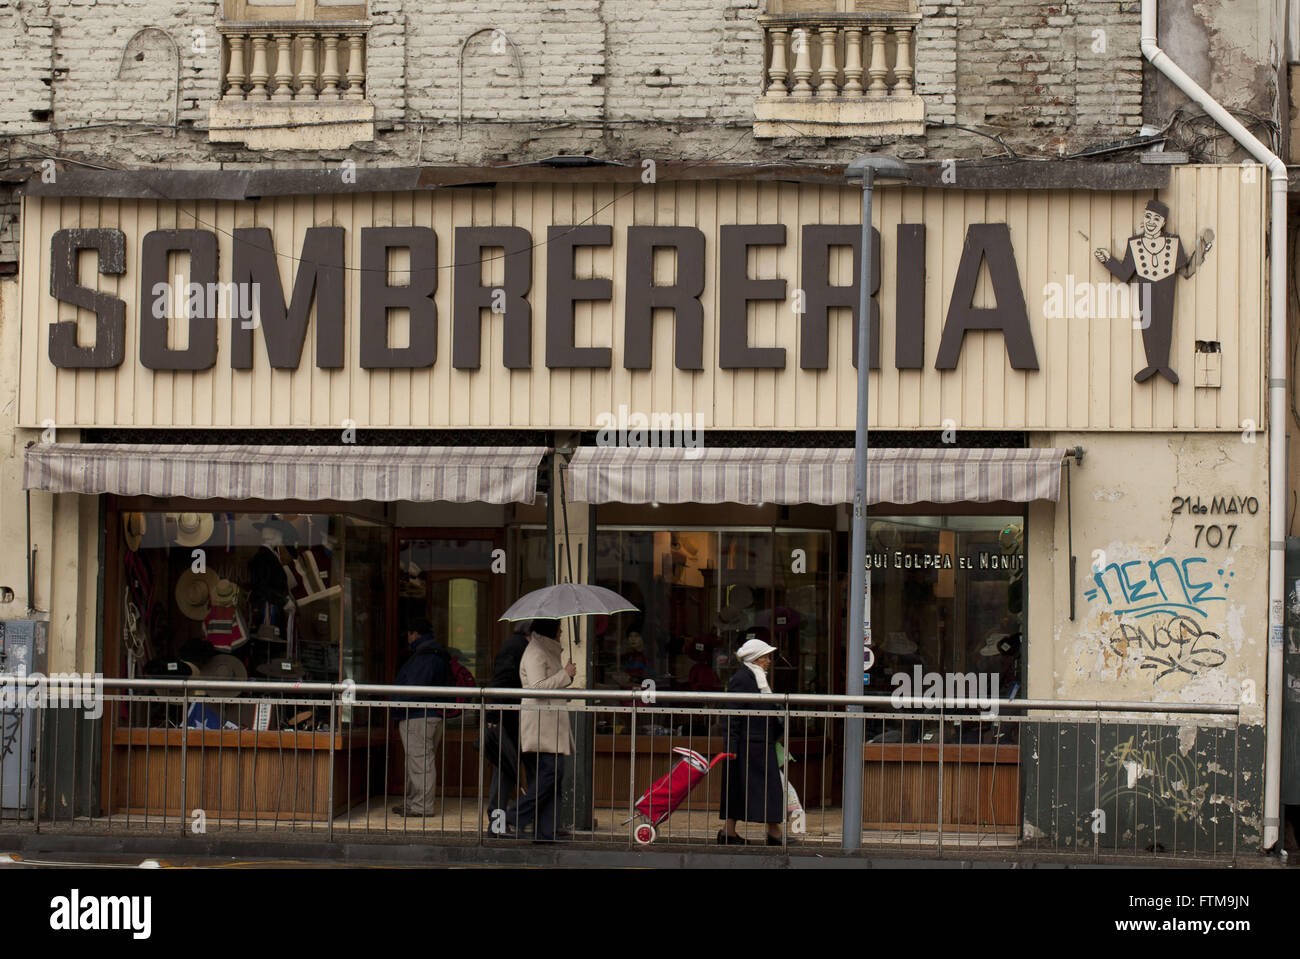 Sombrereria - terrasses commerciales dans le centre-ville de Santiago - Chili Banque D'Images